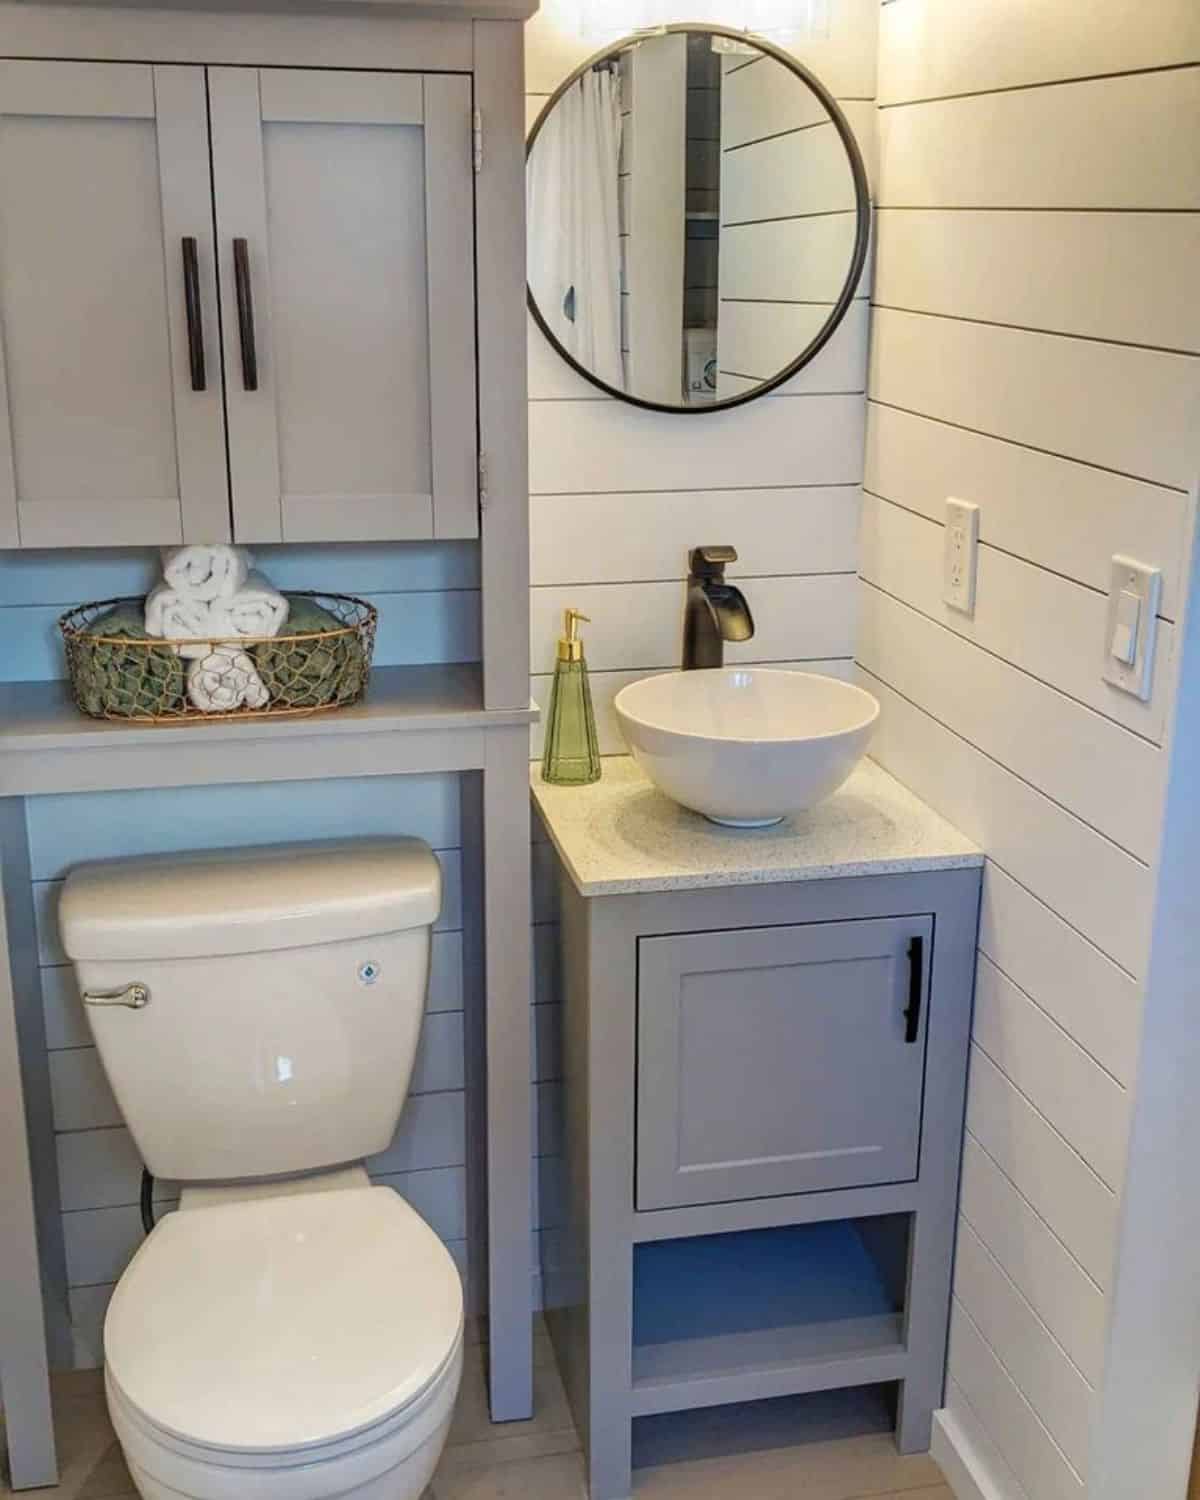 Standard toilet, sink with vanity & mirror in bathroom